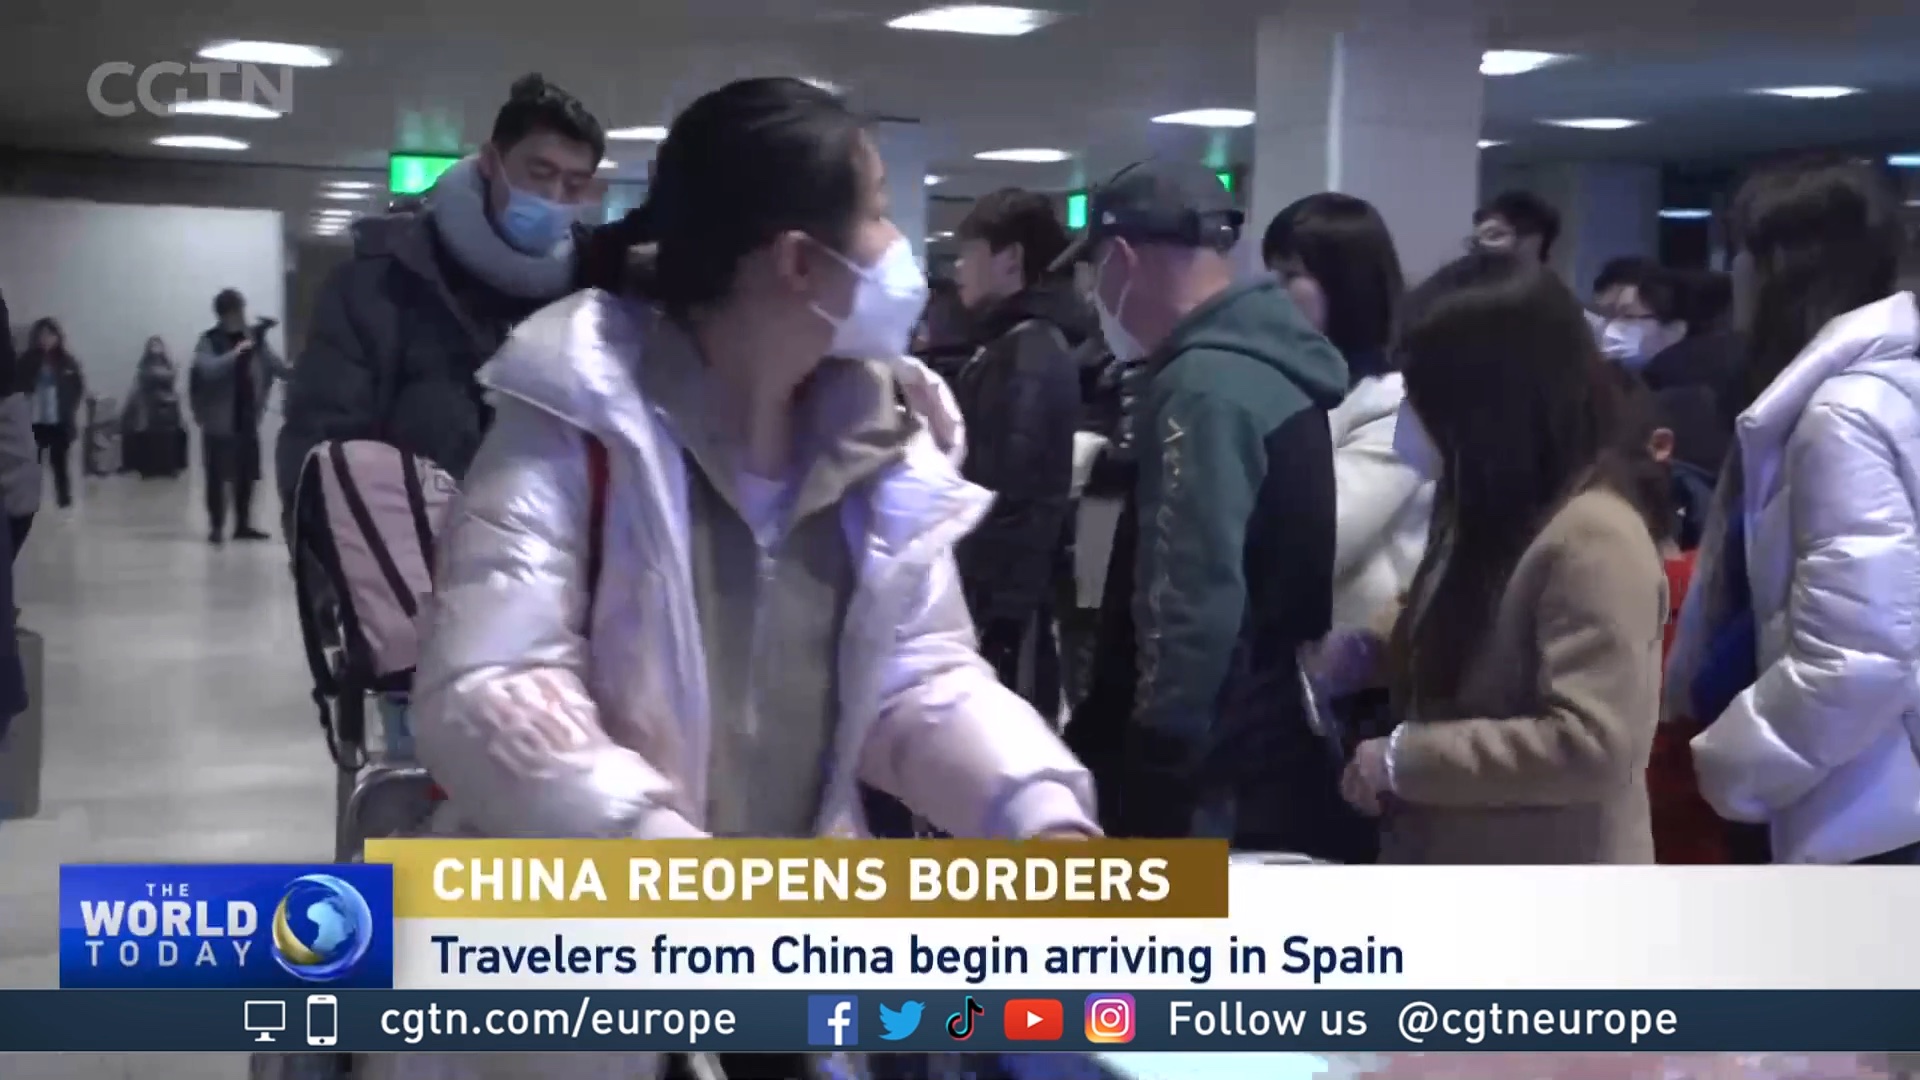 Los encuentros emocionales y el turismo impulsan España con la reapertura de China